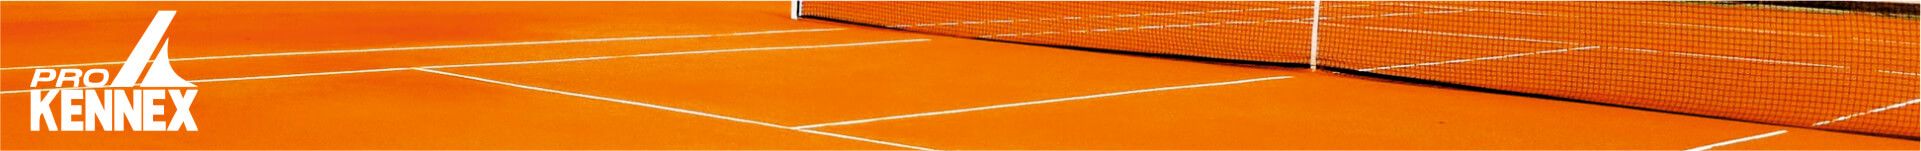 Racchette Pro Kennex - Tennis Corner